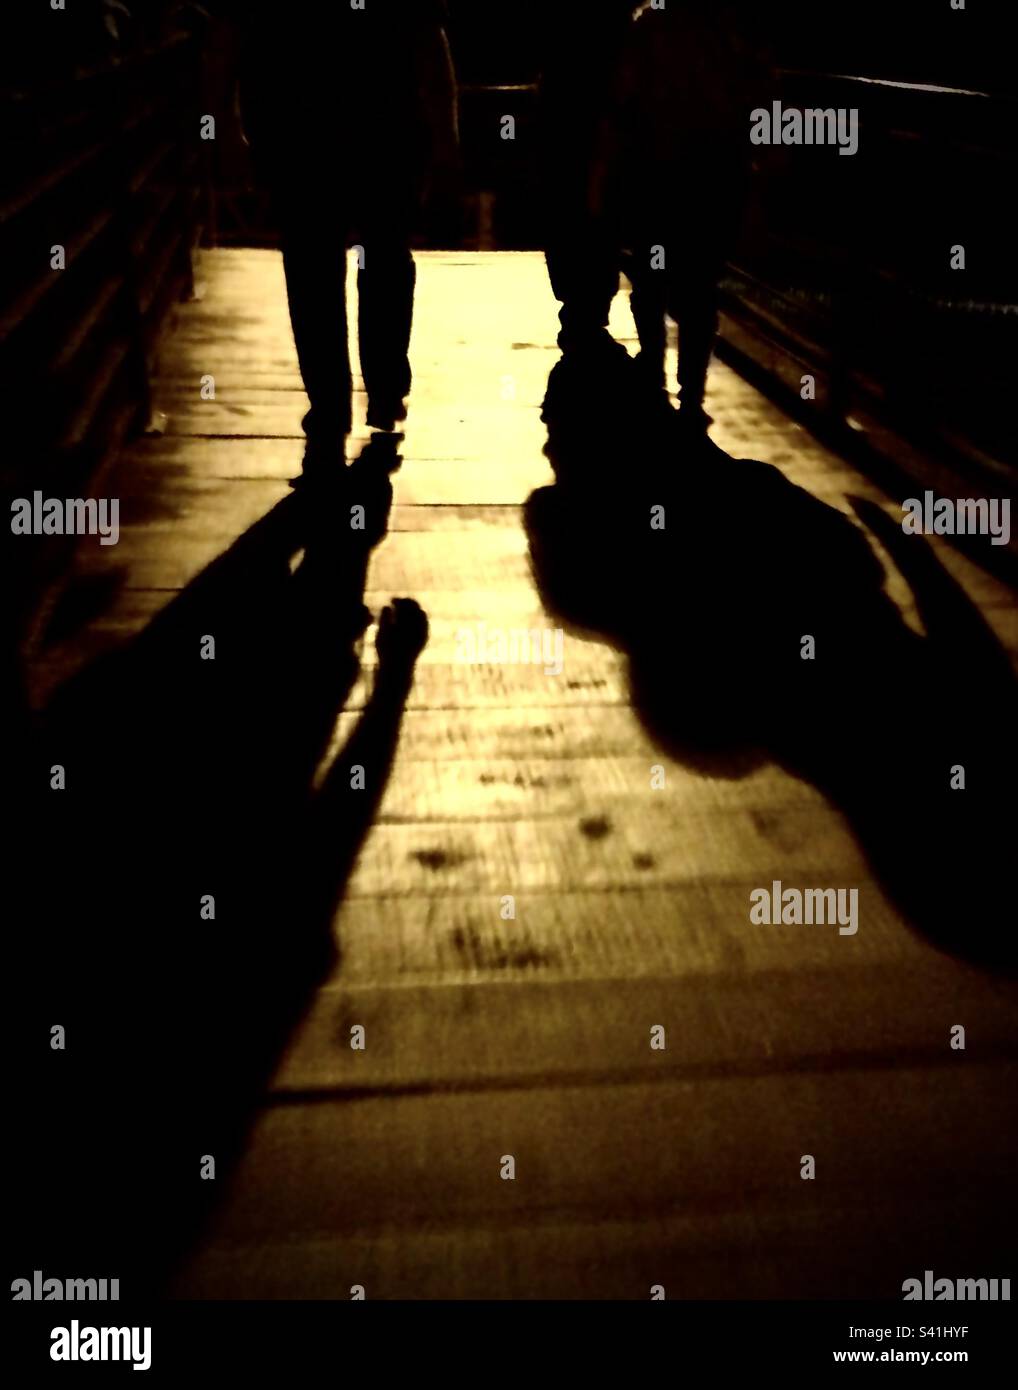 Silhouette der Beine von zwei Personen, die nachts im Dunkeln gehen, mit einem gelben Licht im Hintergrund Stockfoto